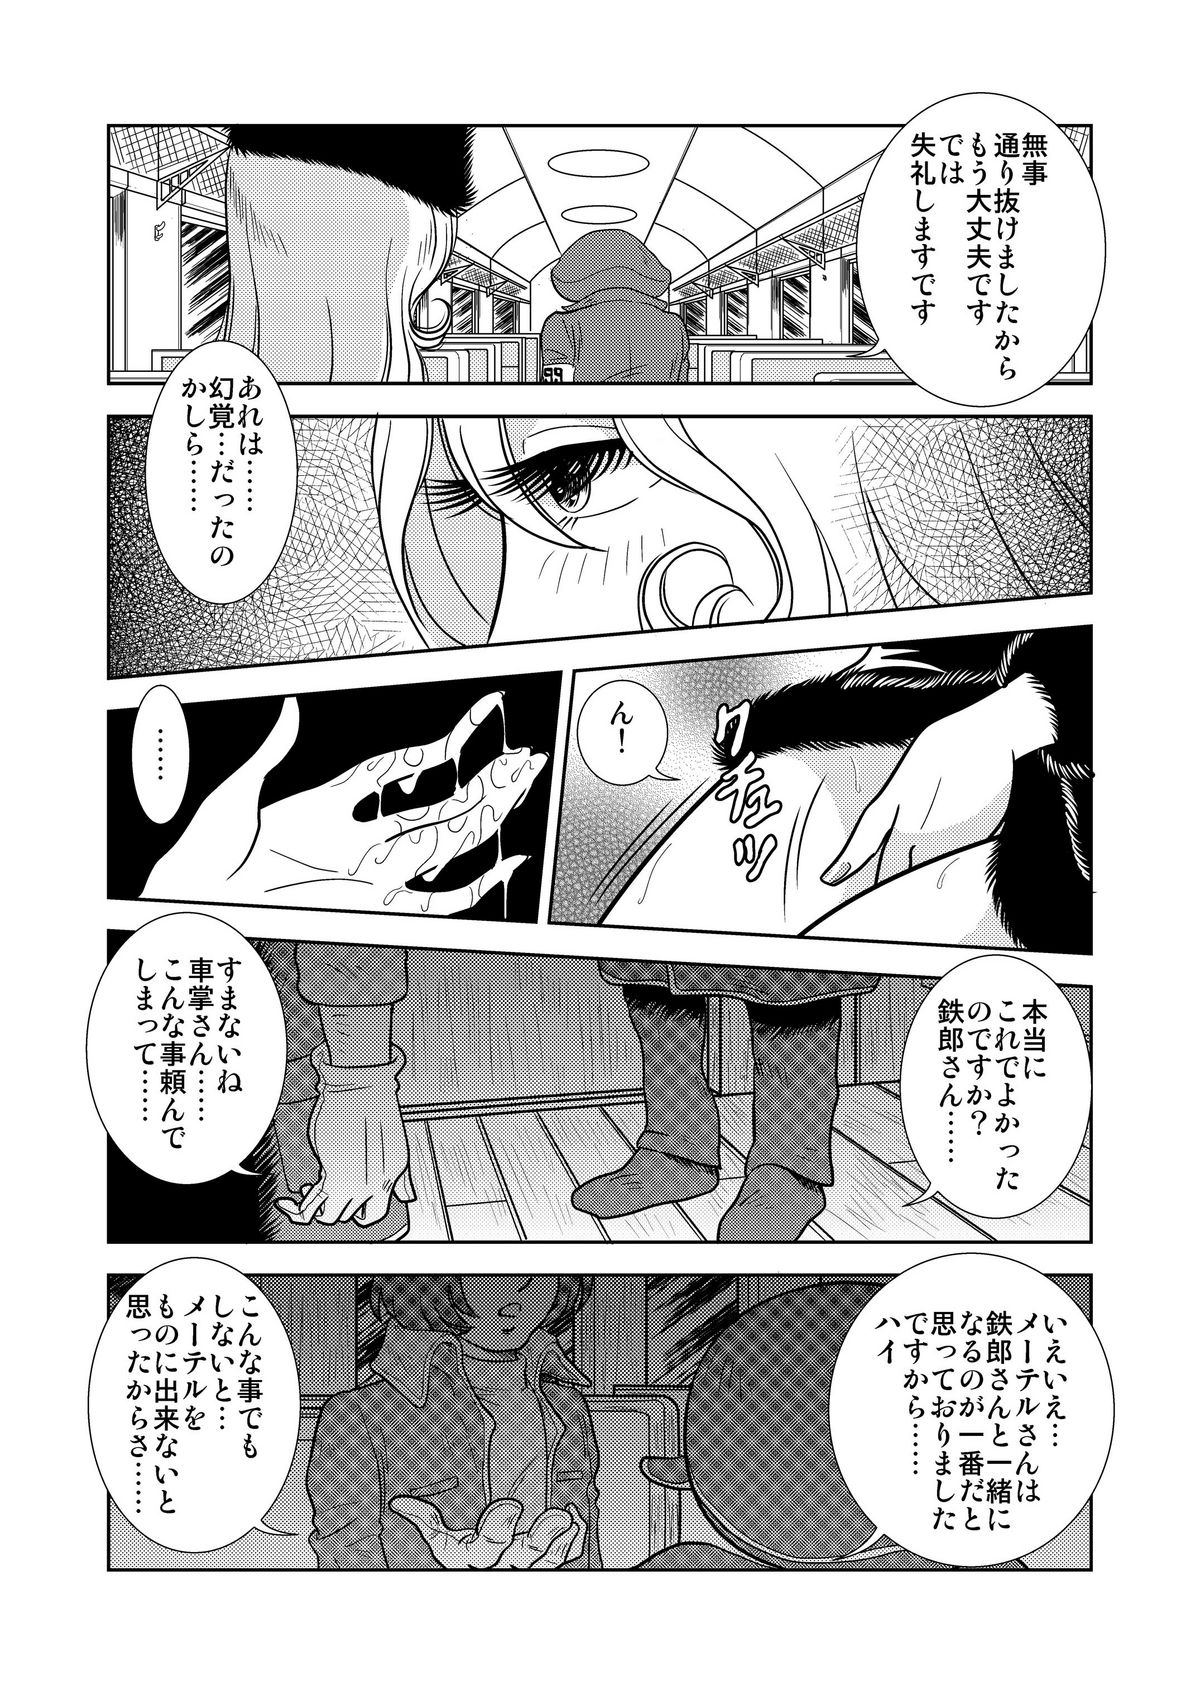 [かぐや姫] Maetel Story (銀河鉄道999)